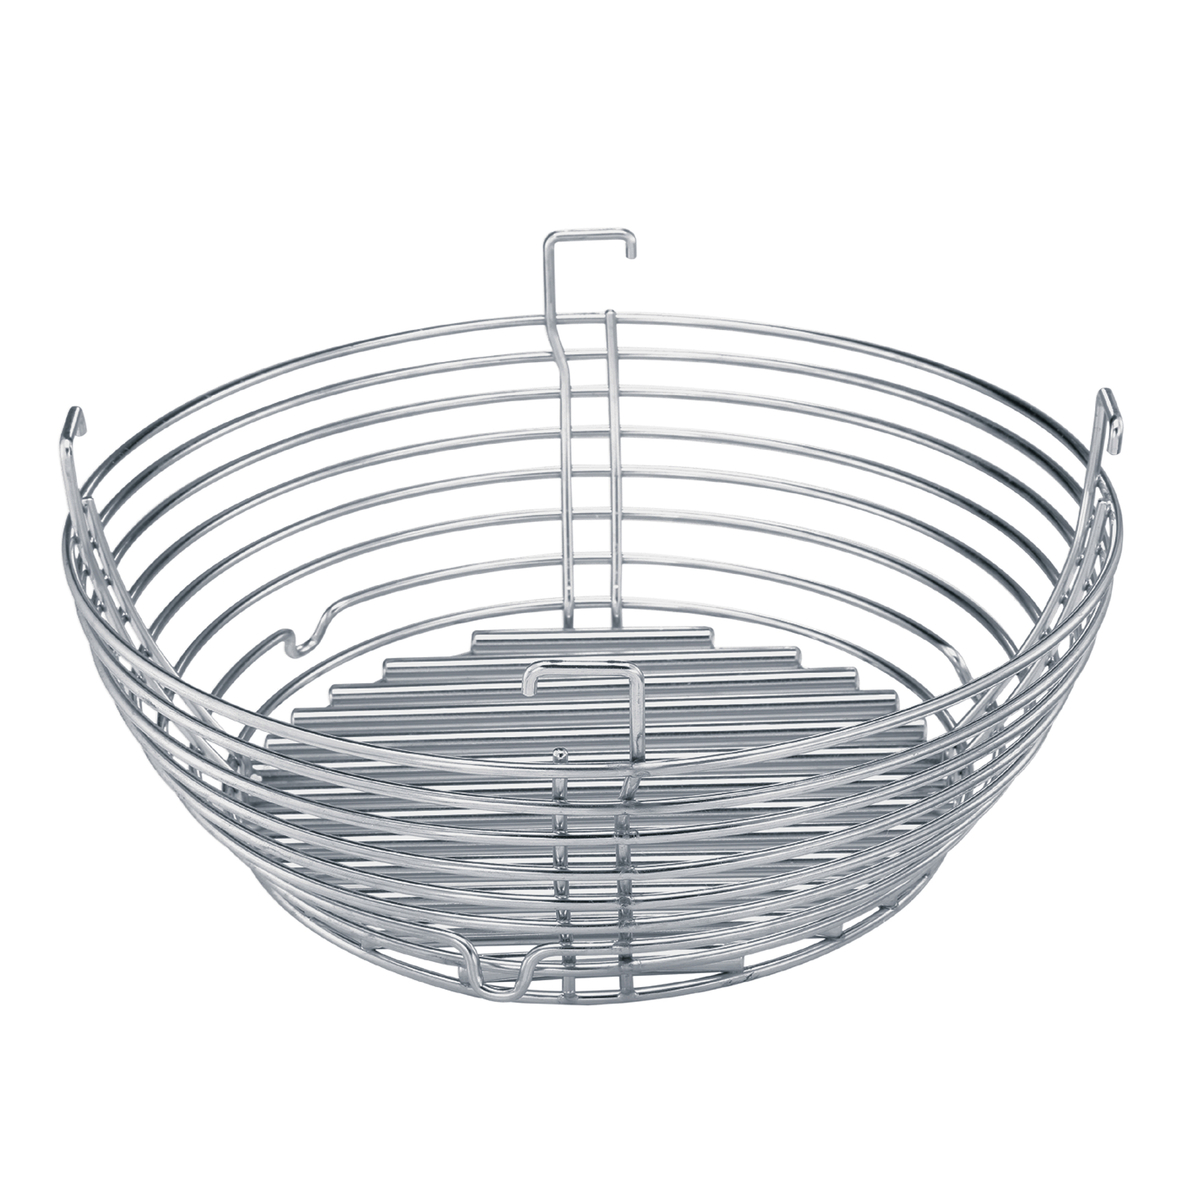 big-joe-kolenmand-charcoal-basket